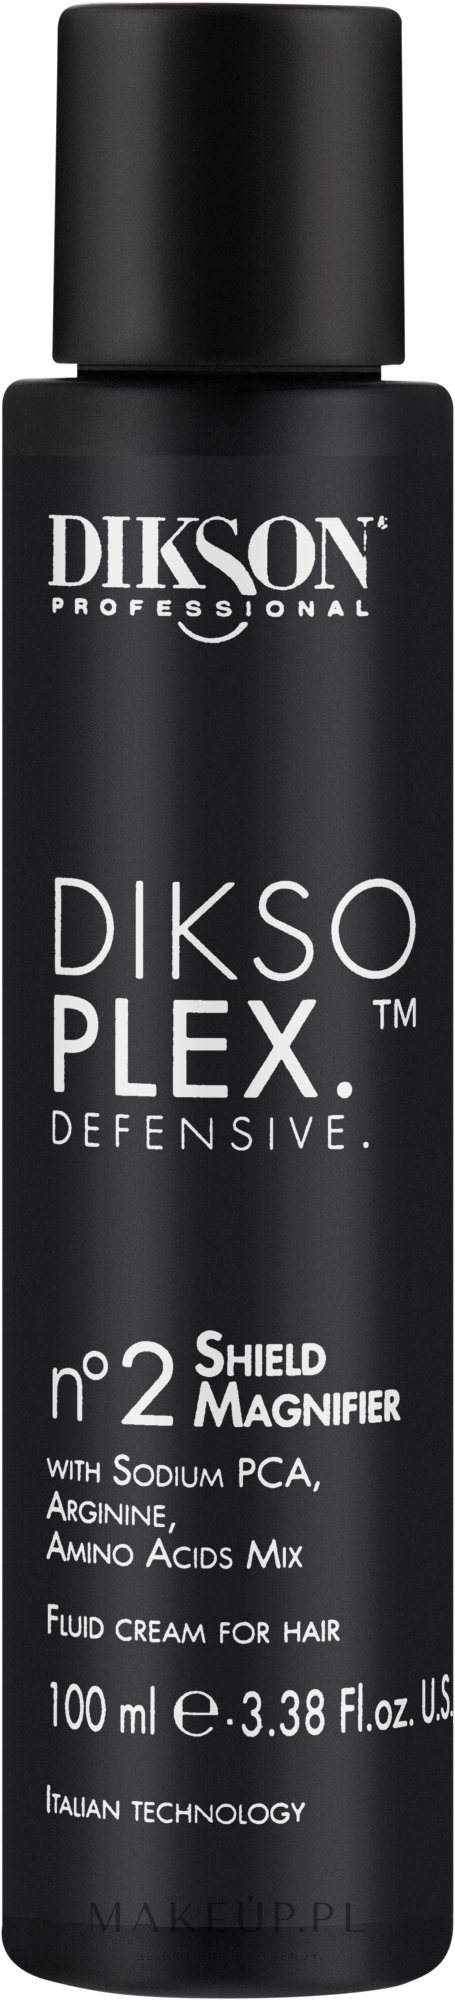 Ochronny fluid-krem do włosów - Dikson Diksoplex Defensive No.2 Shield Magnifier Fluid Cream For Hair — Zdjęcie 100 ml